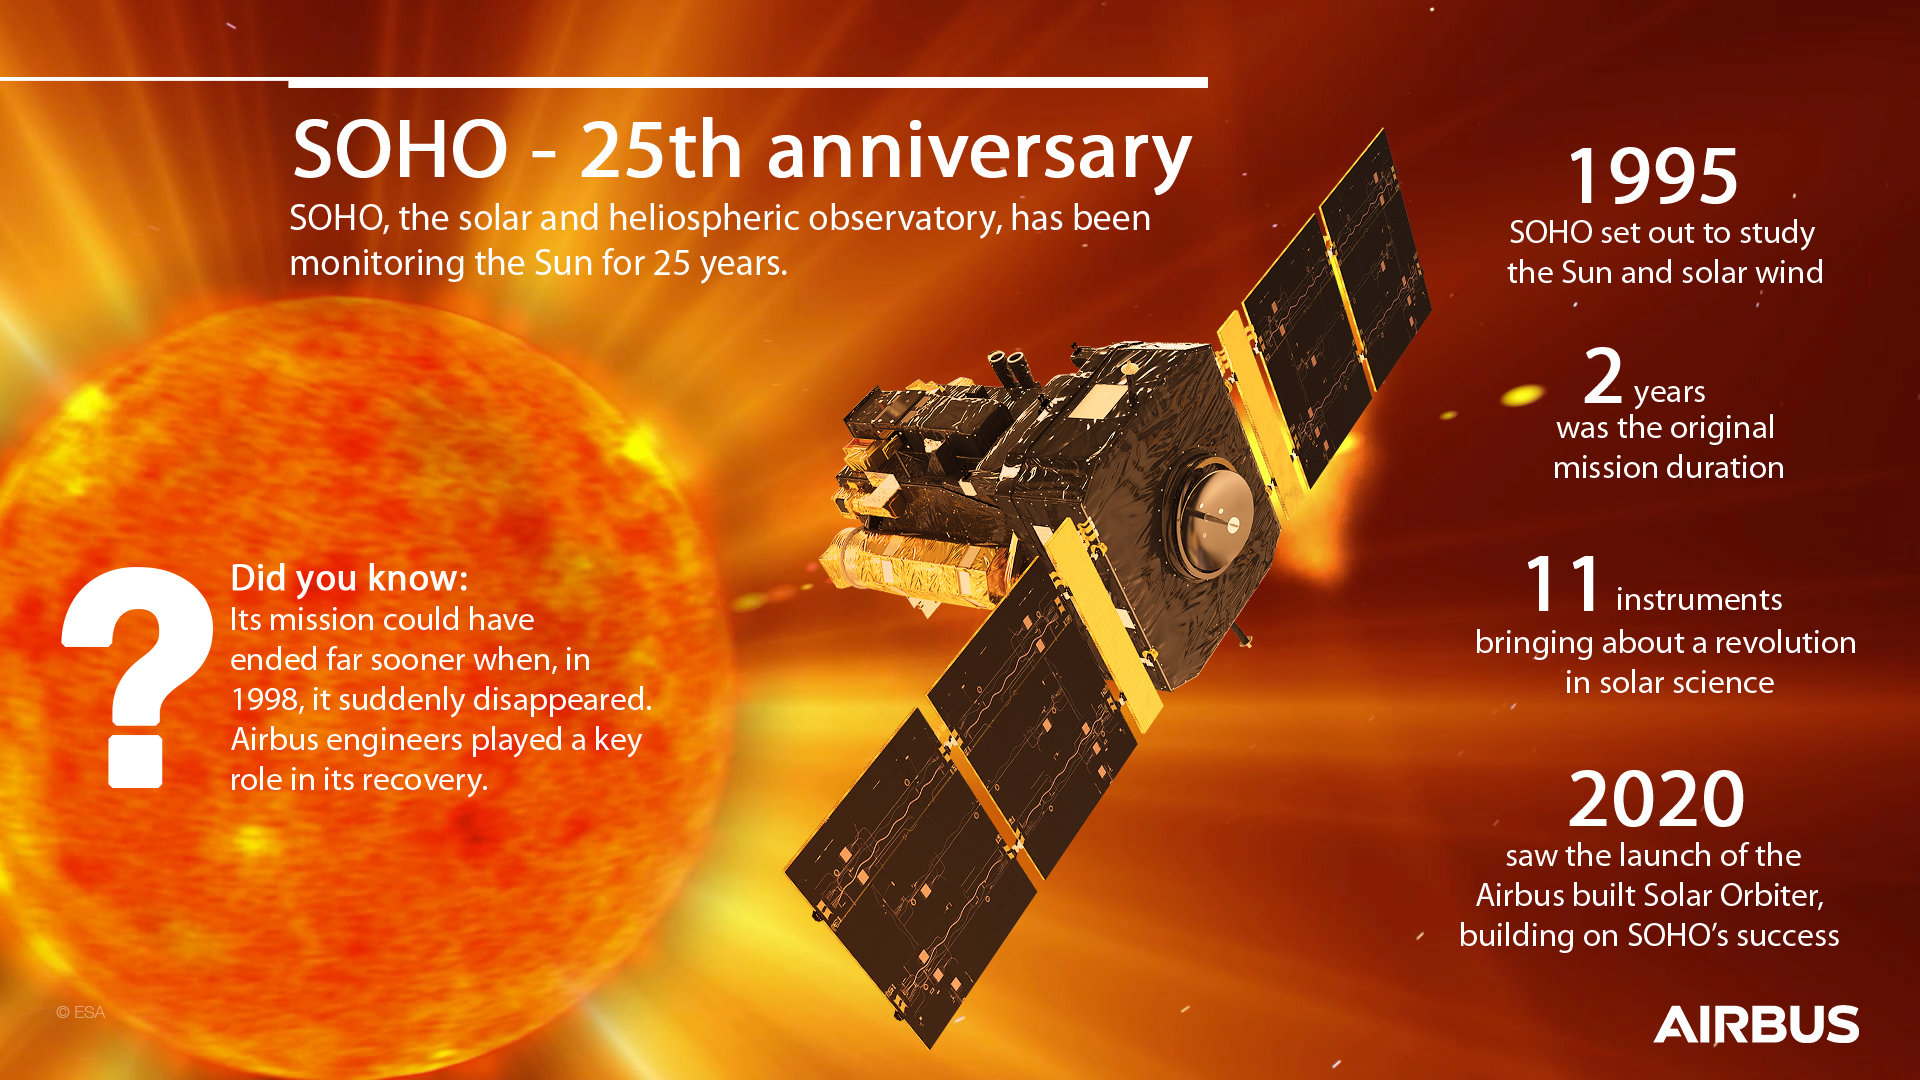 تويتر \ Airbus Space على تويتر: "Happy birthday SOHO! The world's longest-lived Sun satellite🛰, the @ESA–@NASA Solar and Heliospheric Observatory built by Airbus, was launched on 2 December 1995. It monitors the